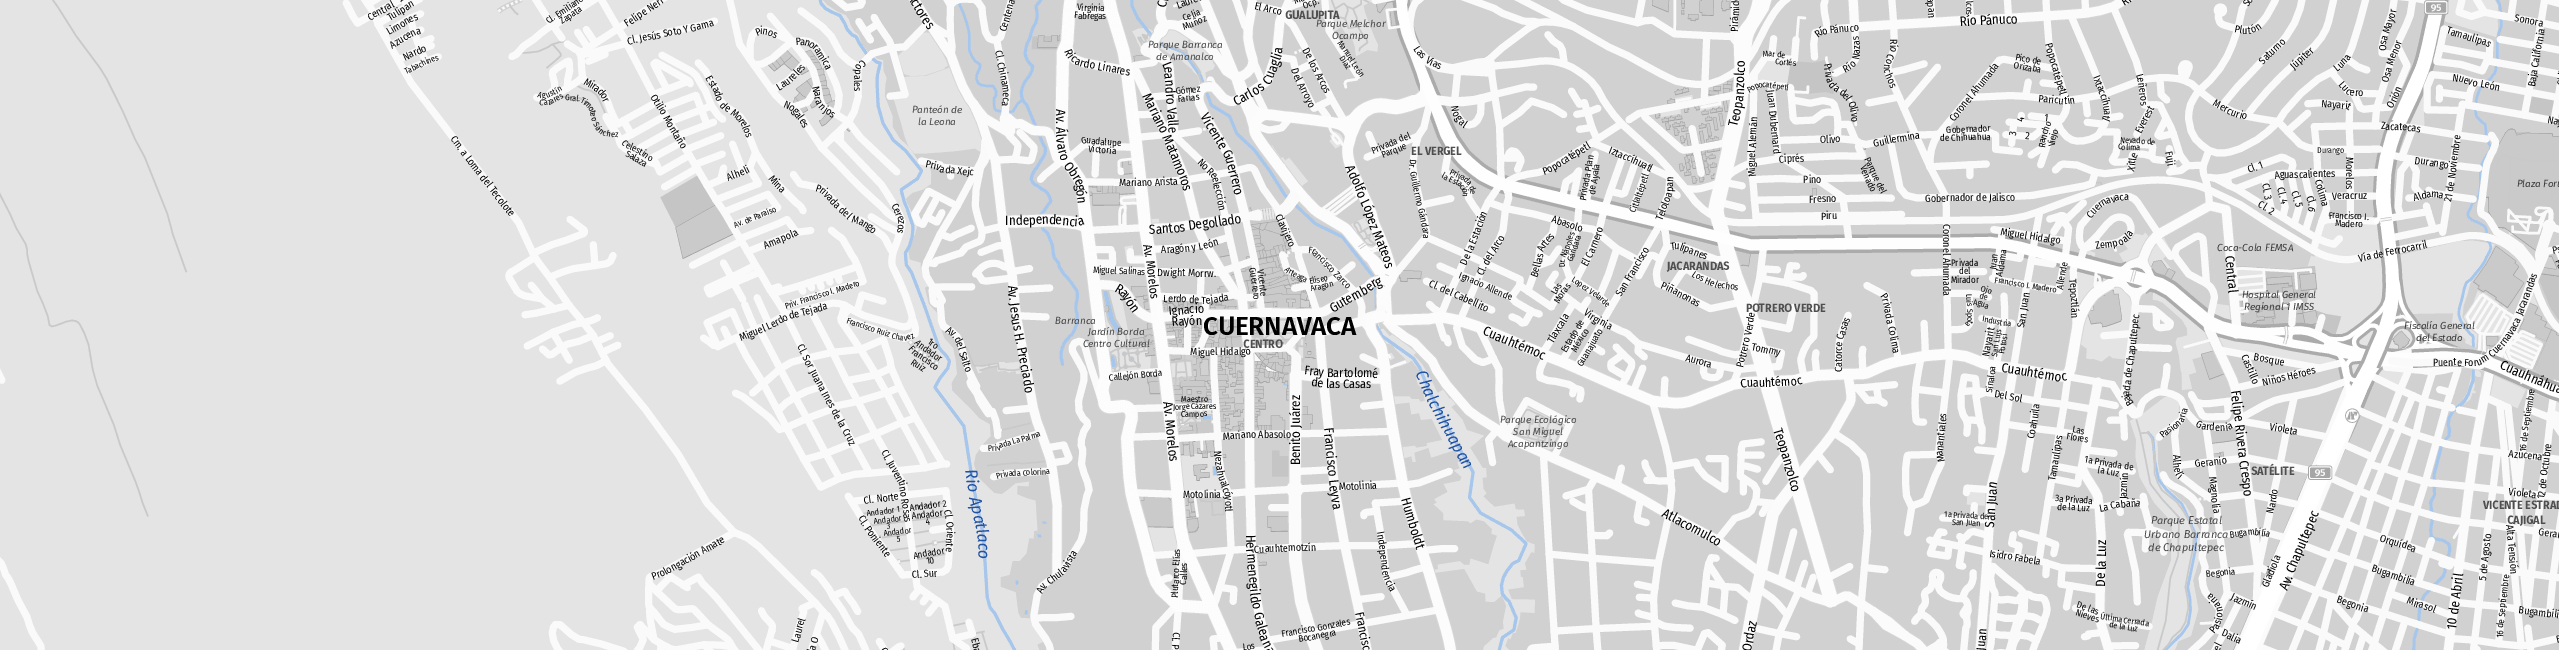 Stadtplan Cuernavaca zum Downloaden.